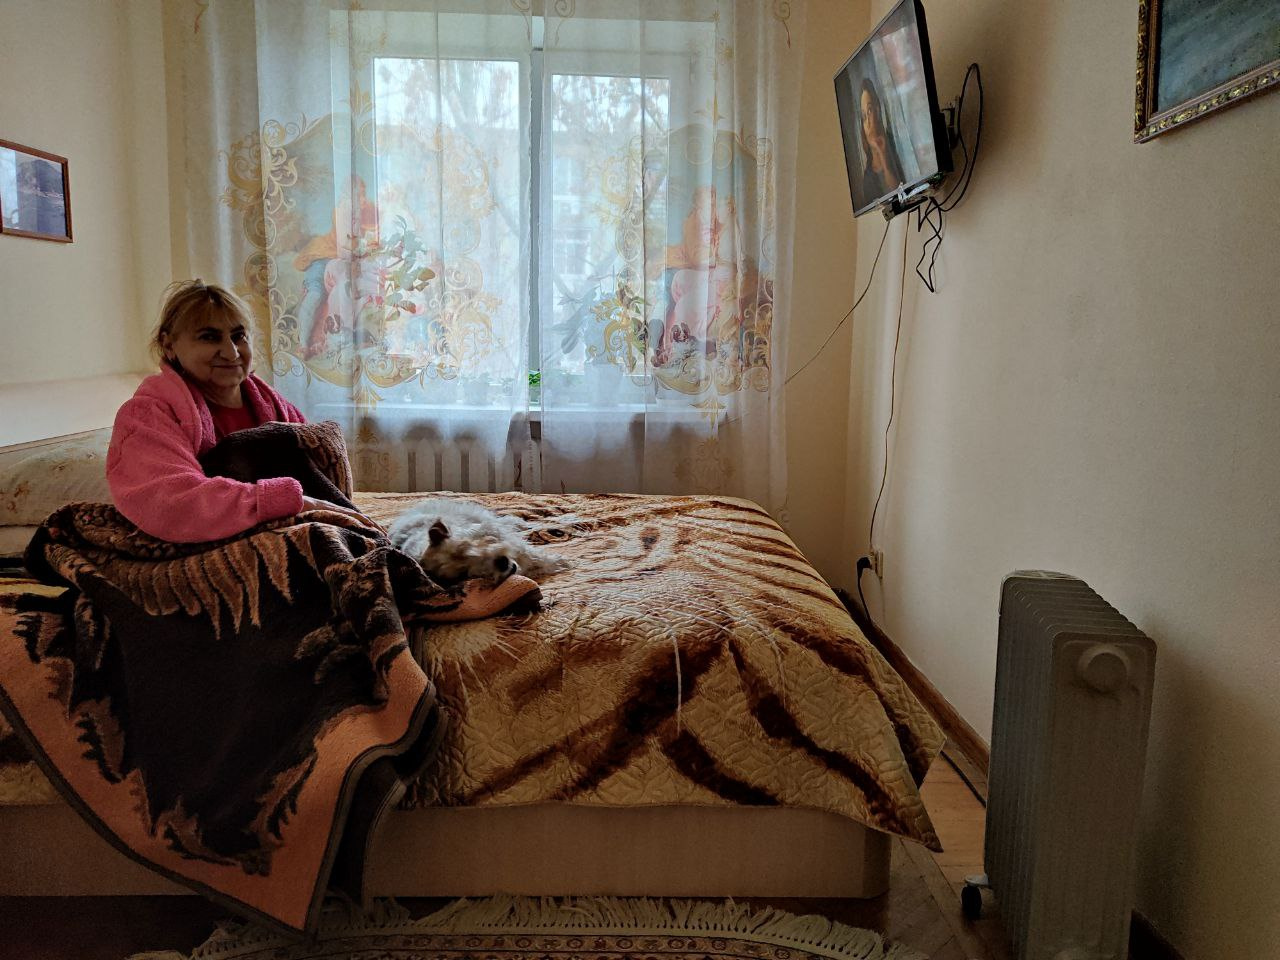 Ростовчане, живущие в доме, вынуждены спать одетыми